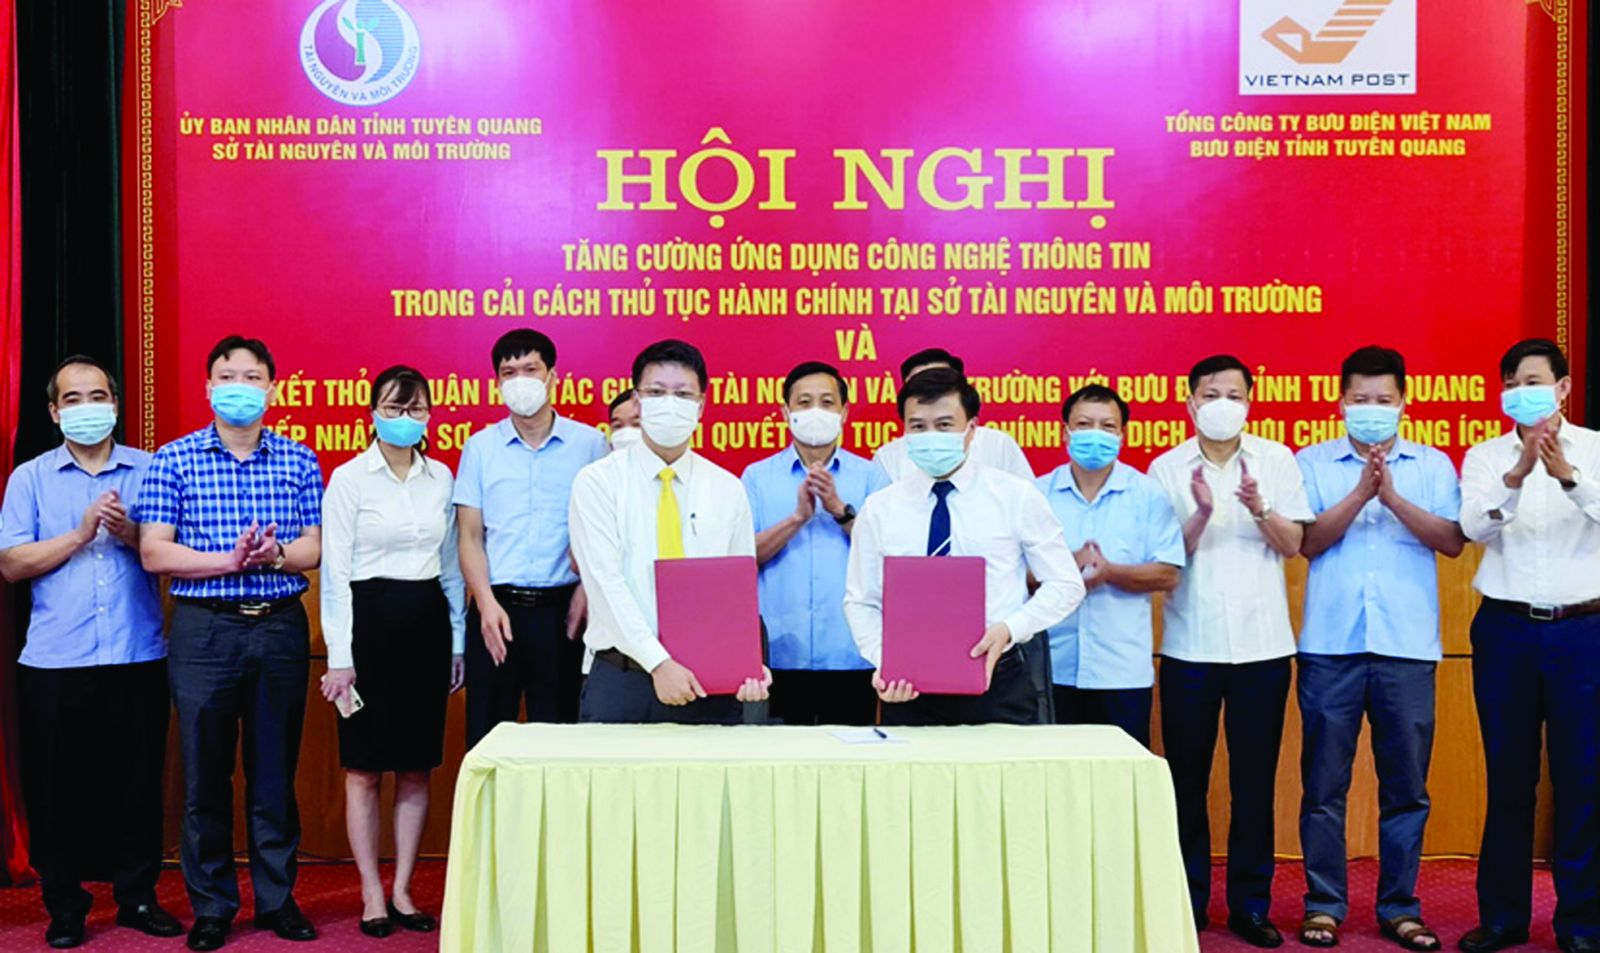  Sở Tài nguyên và Môi trường Tuyên Quang và Bưu điện tỉnh ký kết thỏa thuận hợp tác để triển khai dịch vụ bưu chính công ích.